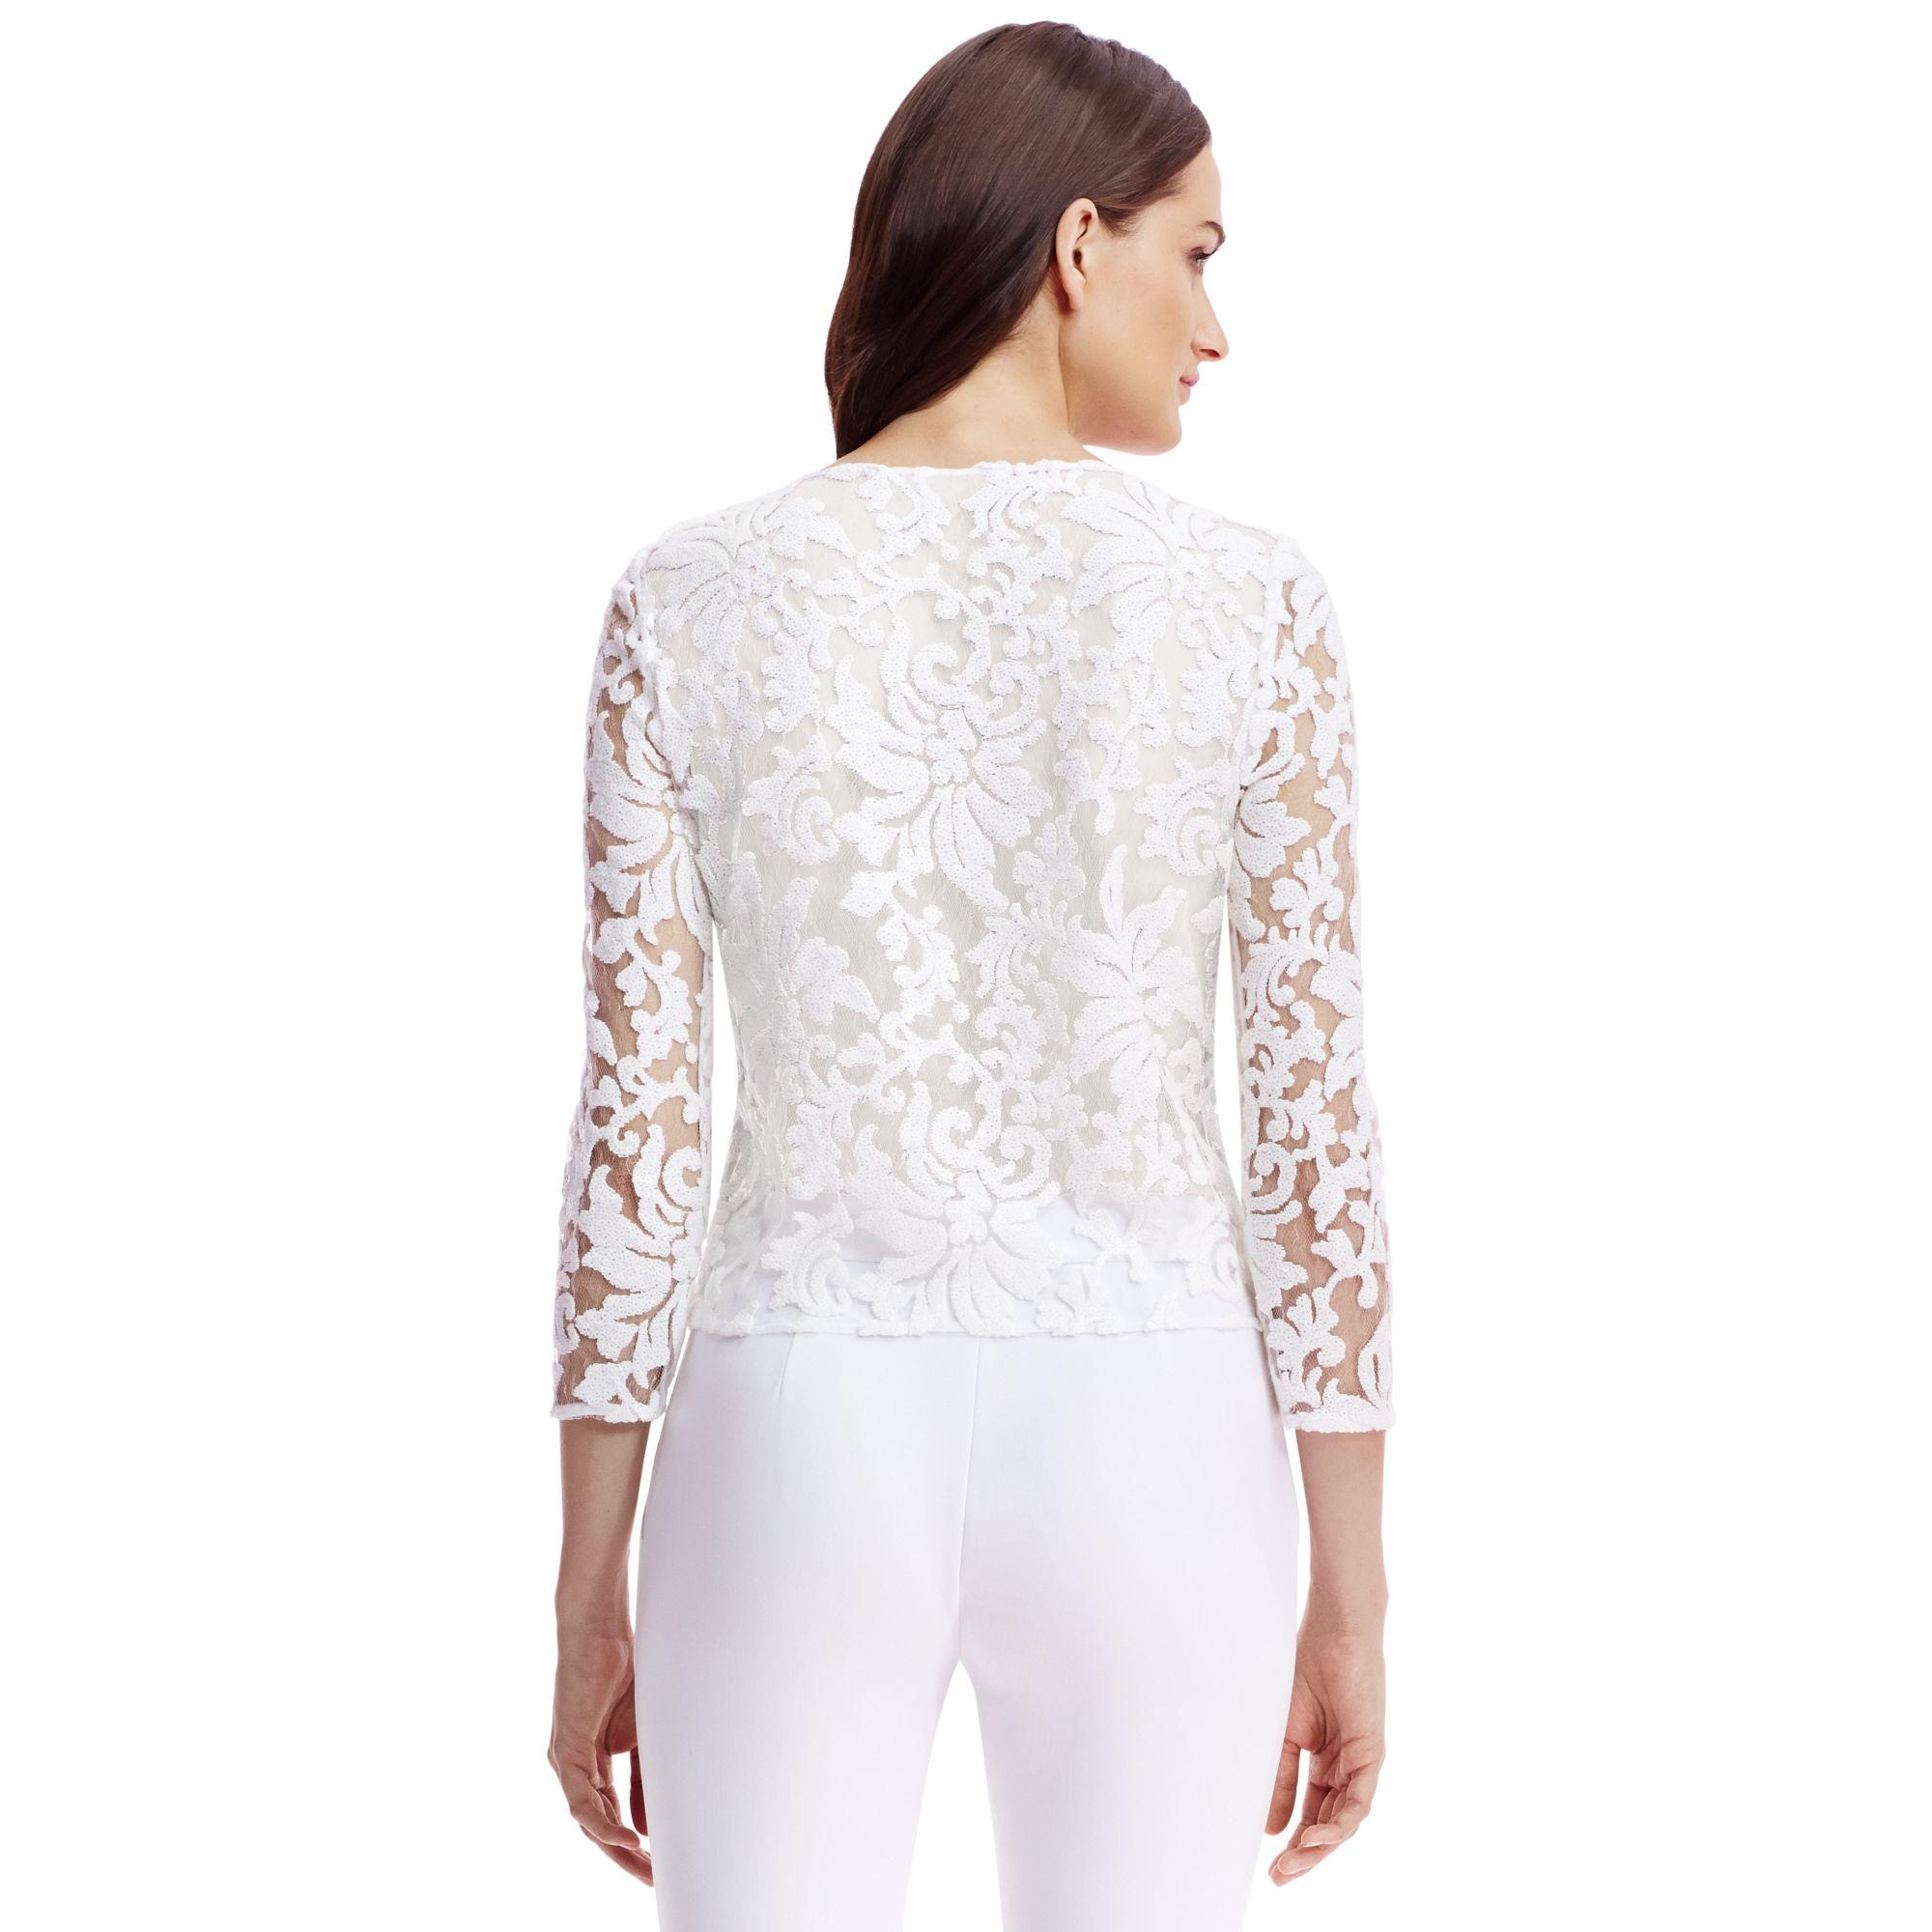 Lyst - Diane von Furstenberg Dvf Belle Embellished Lace Top in White